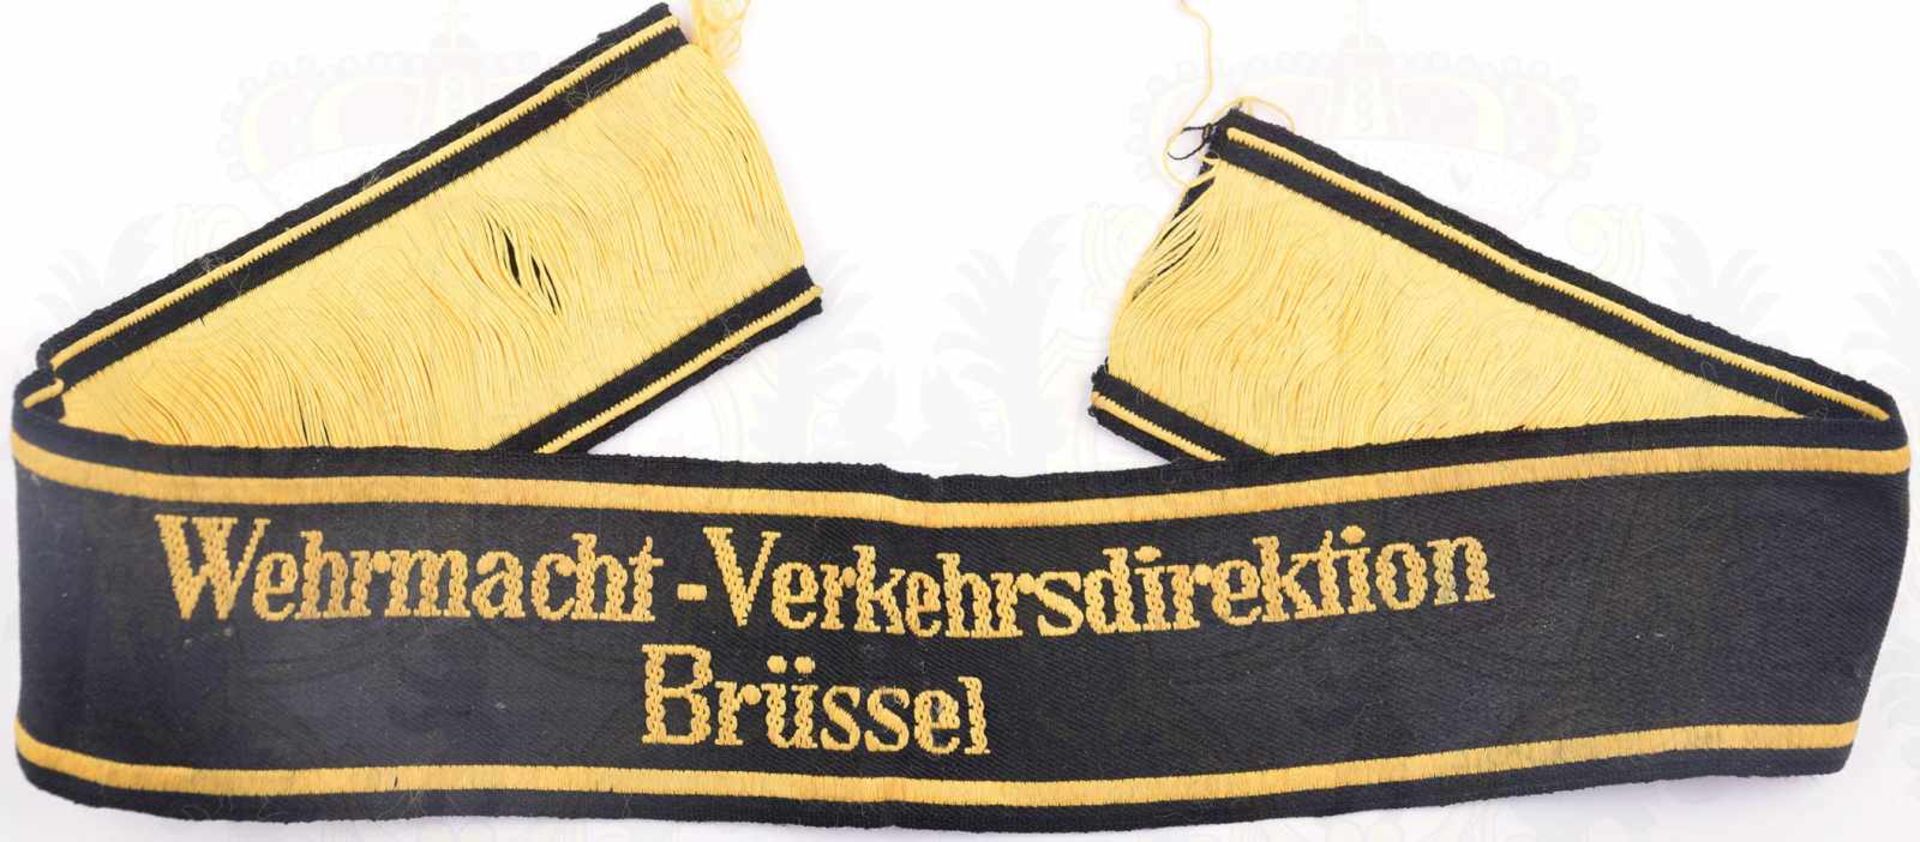 ÄRMELBAND WEHRMACHT-VERKEHRSDIREKTION BRÜSSEL, gewebt, gelb/schwarz, L. 43cm, ungetragen, um 1940 - Bild 2 aus 3